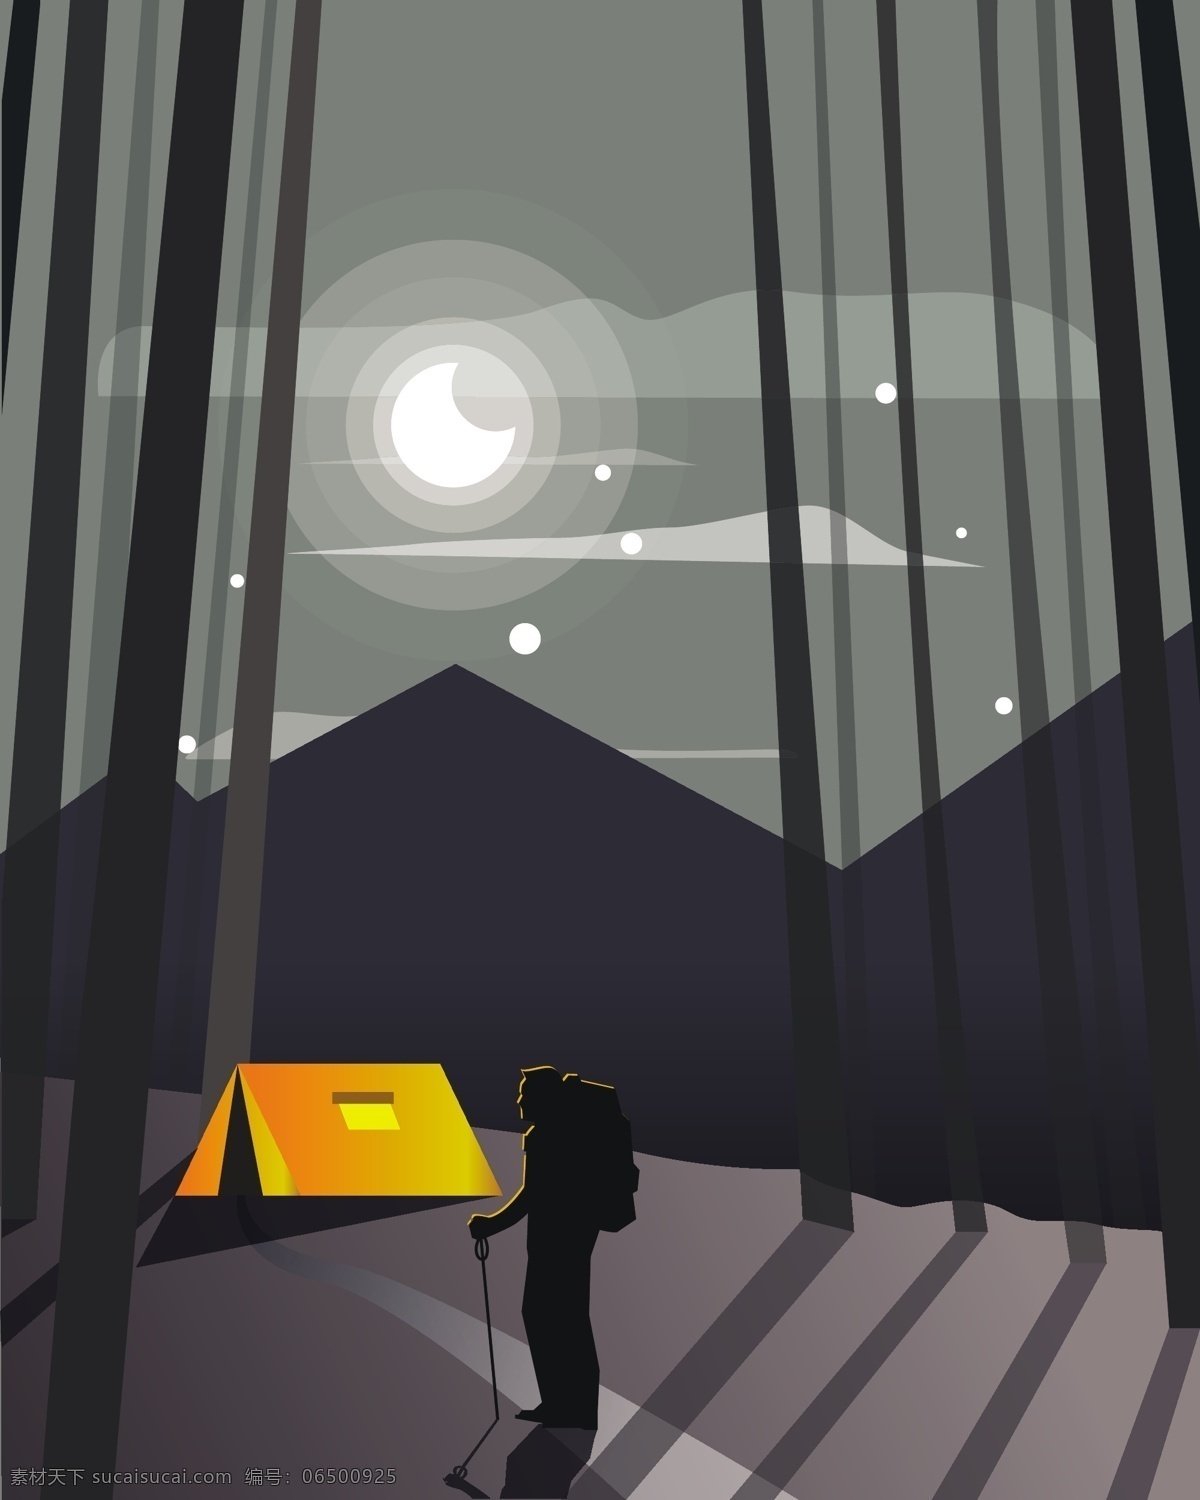 登山 人们 森山 露营 背景 图 广告背景 广告 背景素材 人类 大树 高山 黄色帐篷 夜景 自然风景 圆月 天空 星星